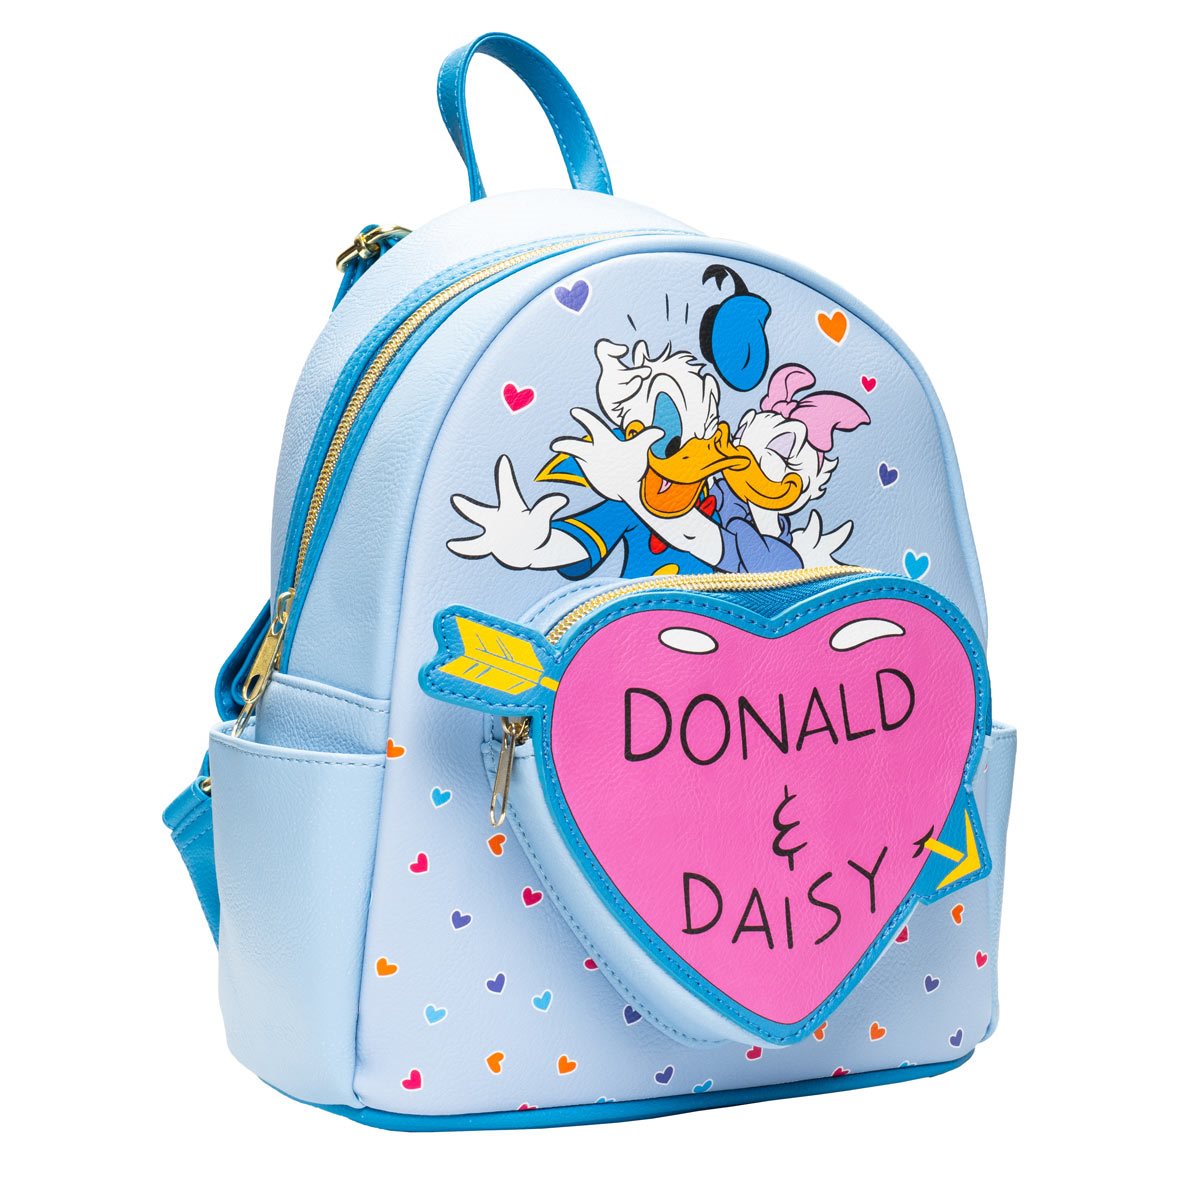 Donald Duck & Daisy Hearts mini backpack Casay